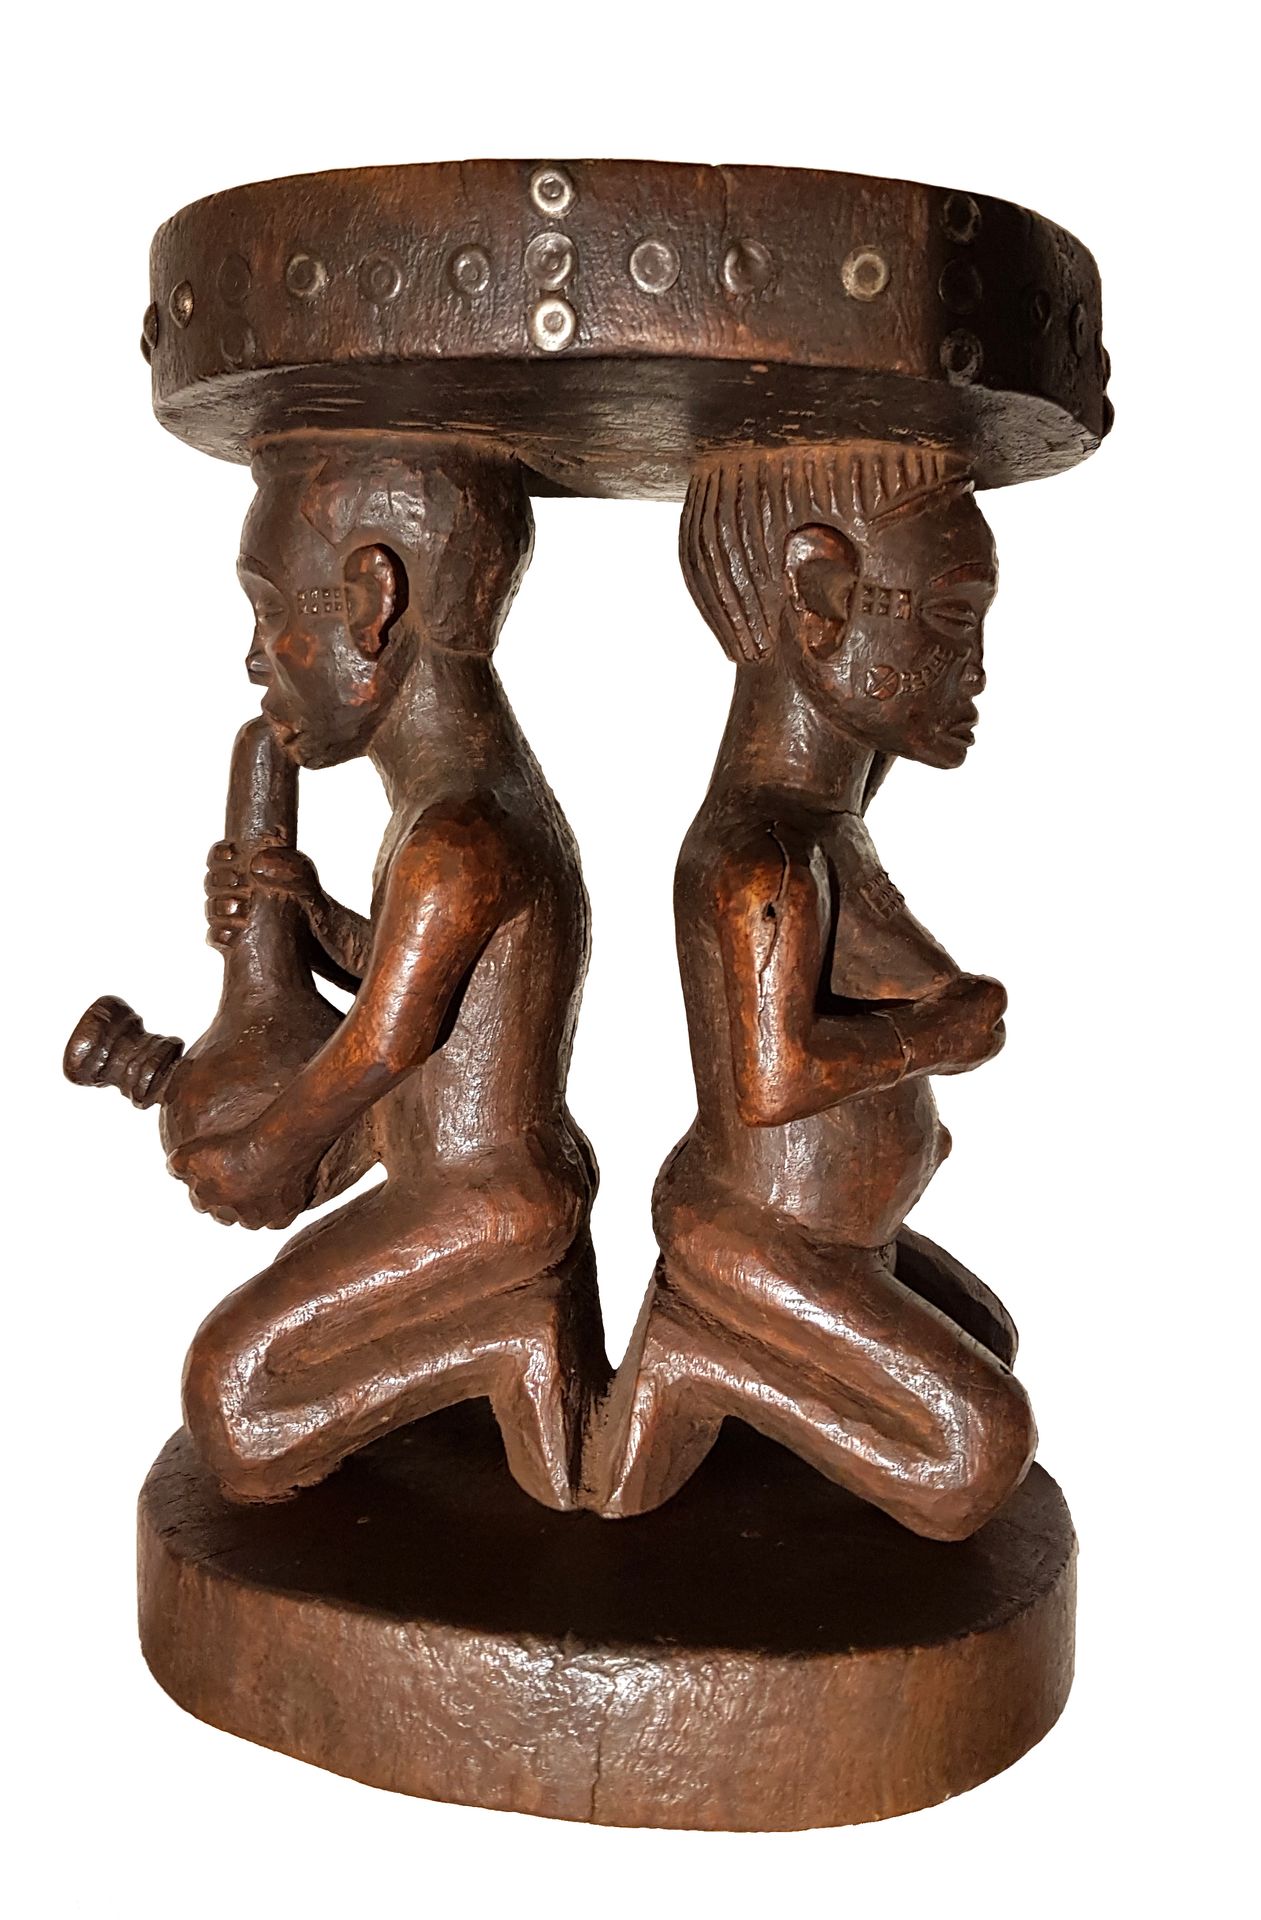 Petit tabouret TCHOKWE 
雕刻着两个背靠背的跪姿人物。带有棕色铜锈的木材，金属。高：30厘米，长：20厘米。安哥拉 - 刚果民主共和国

&hellip;